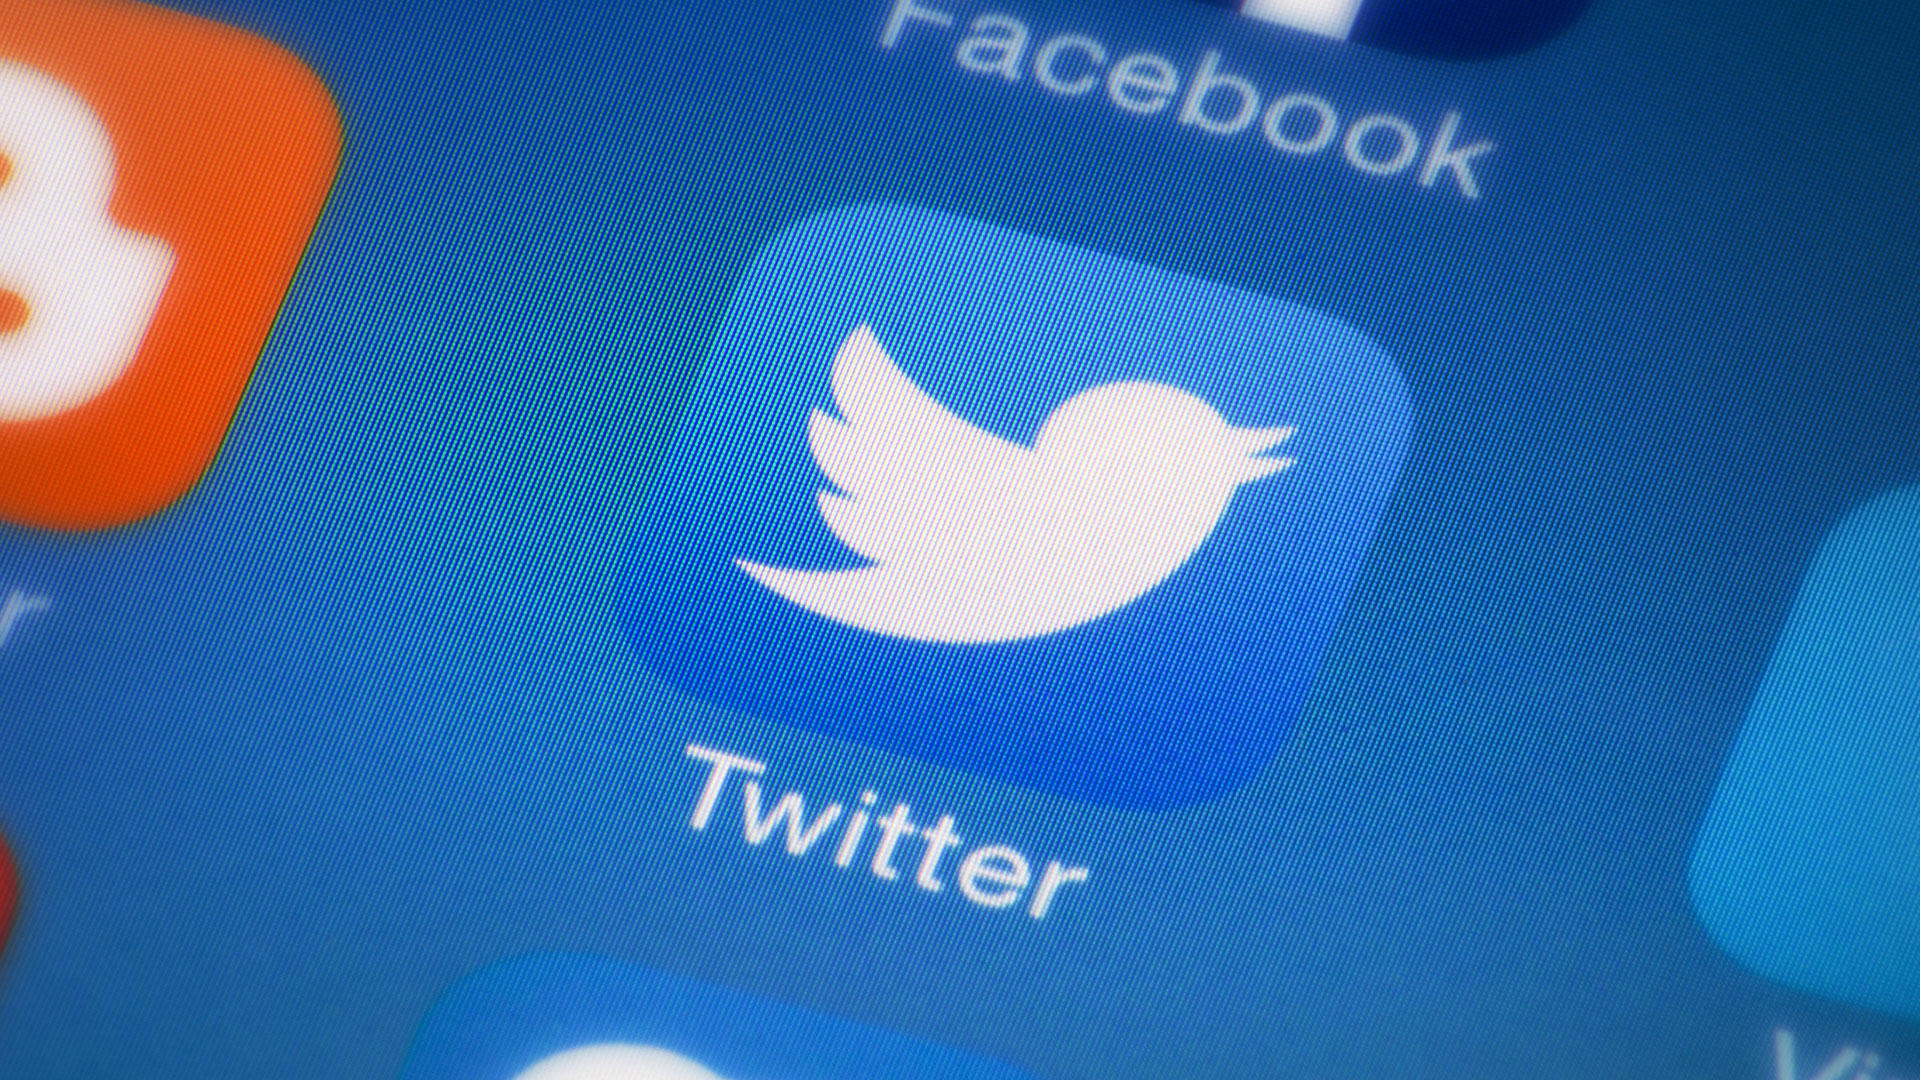 Russia blocks Twitter